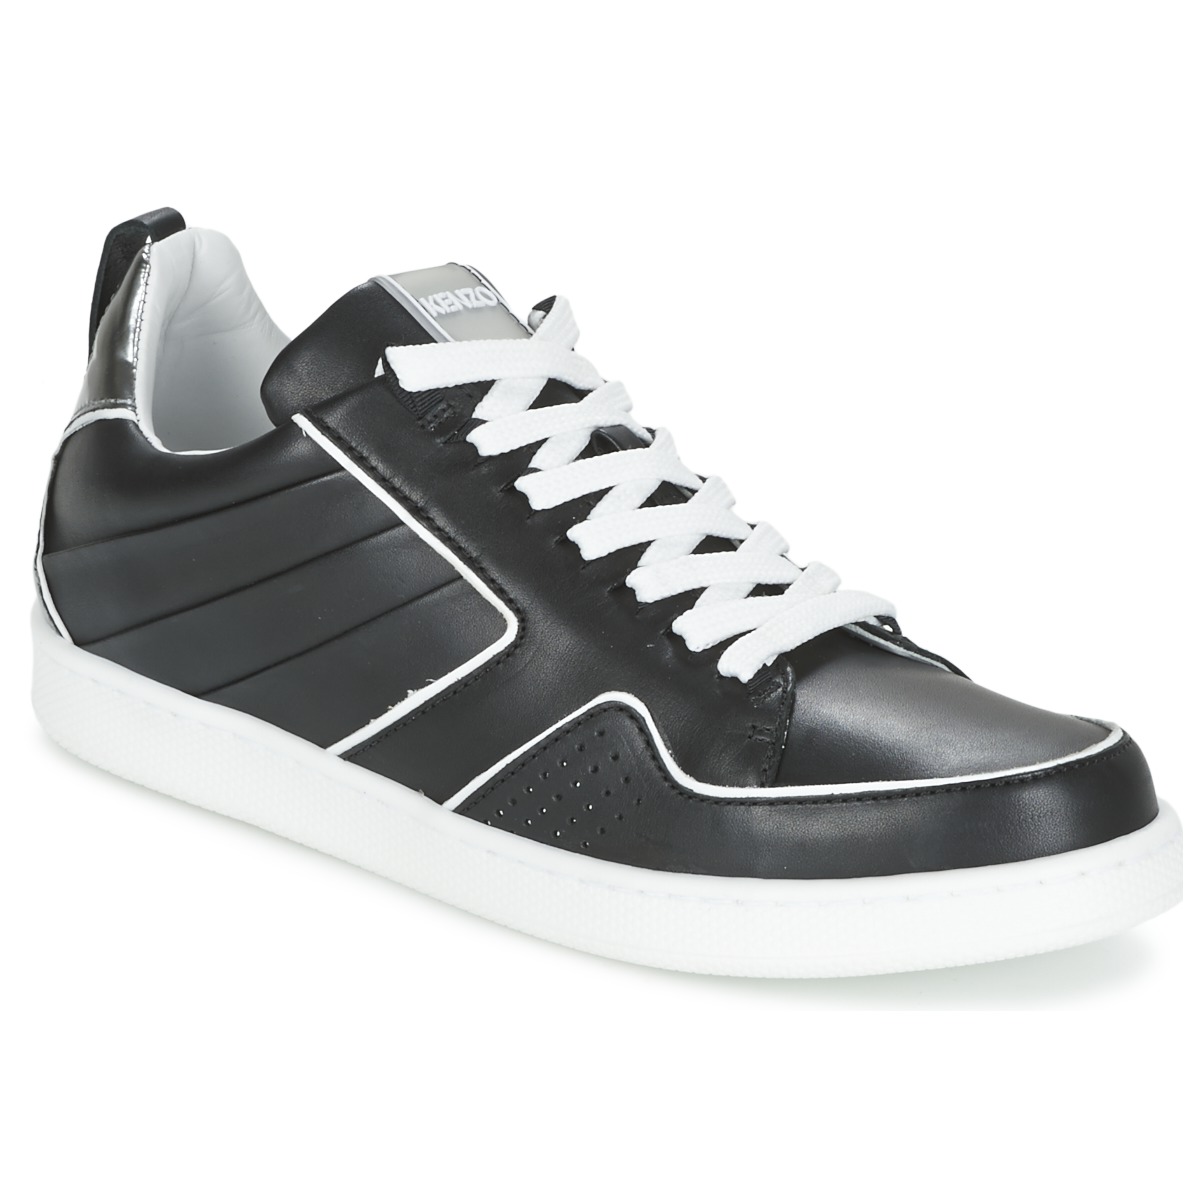 Sko Dame Lave sneakers Kenzo K-FLY Sort / Sølv